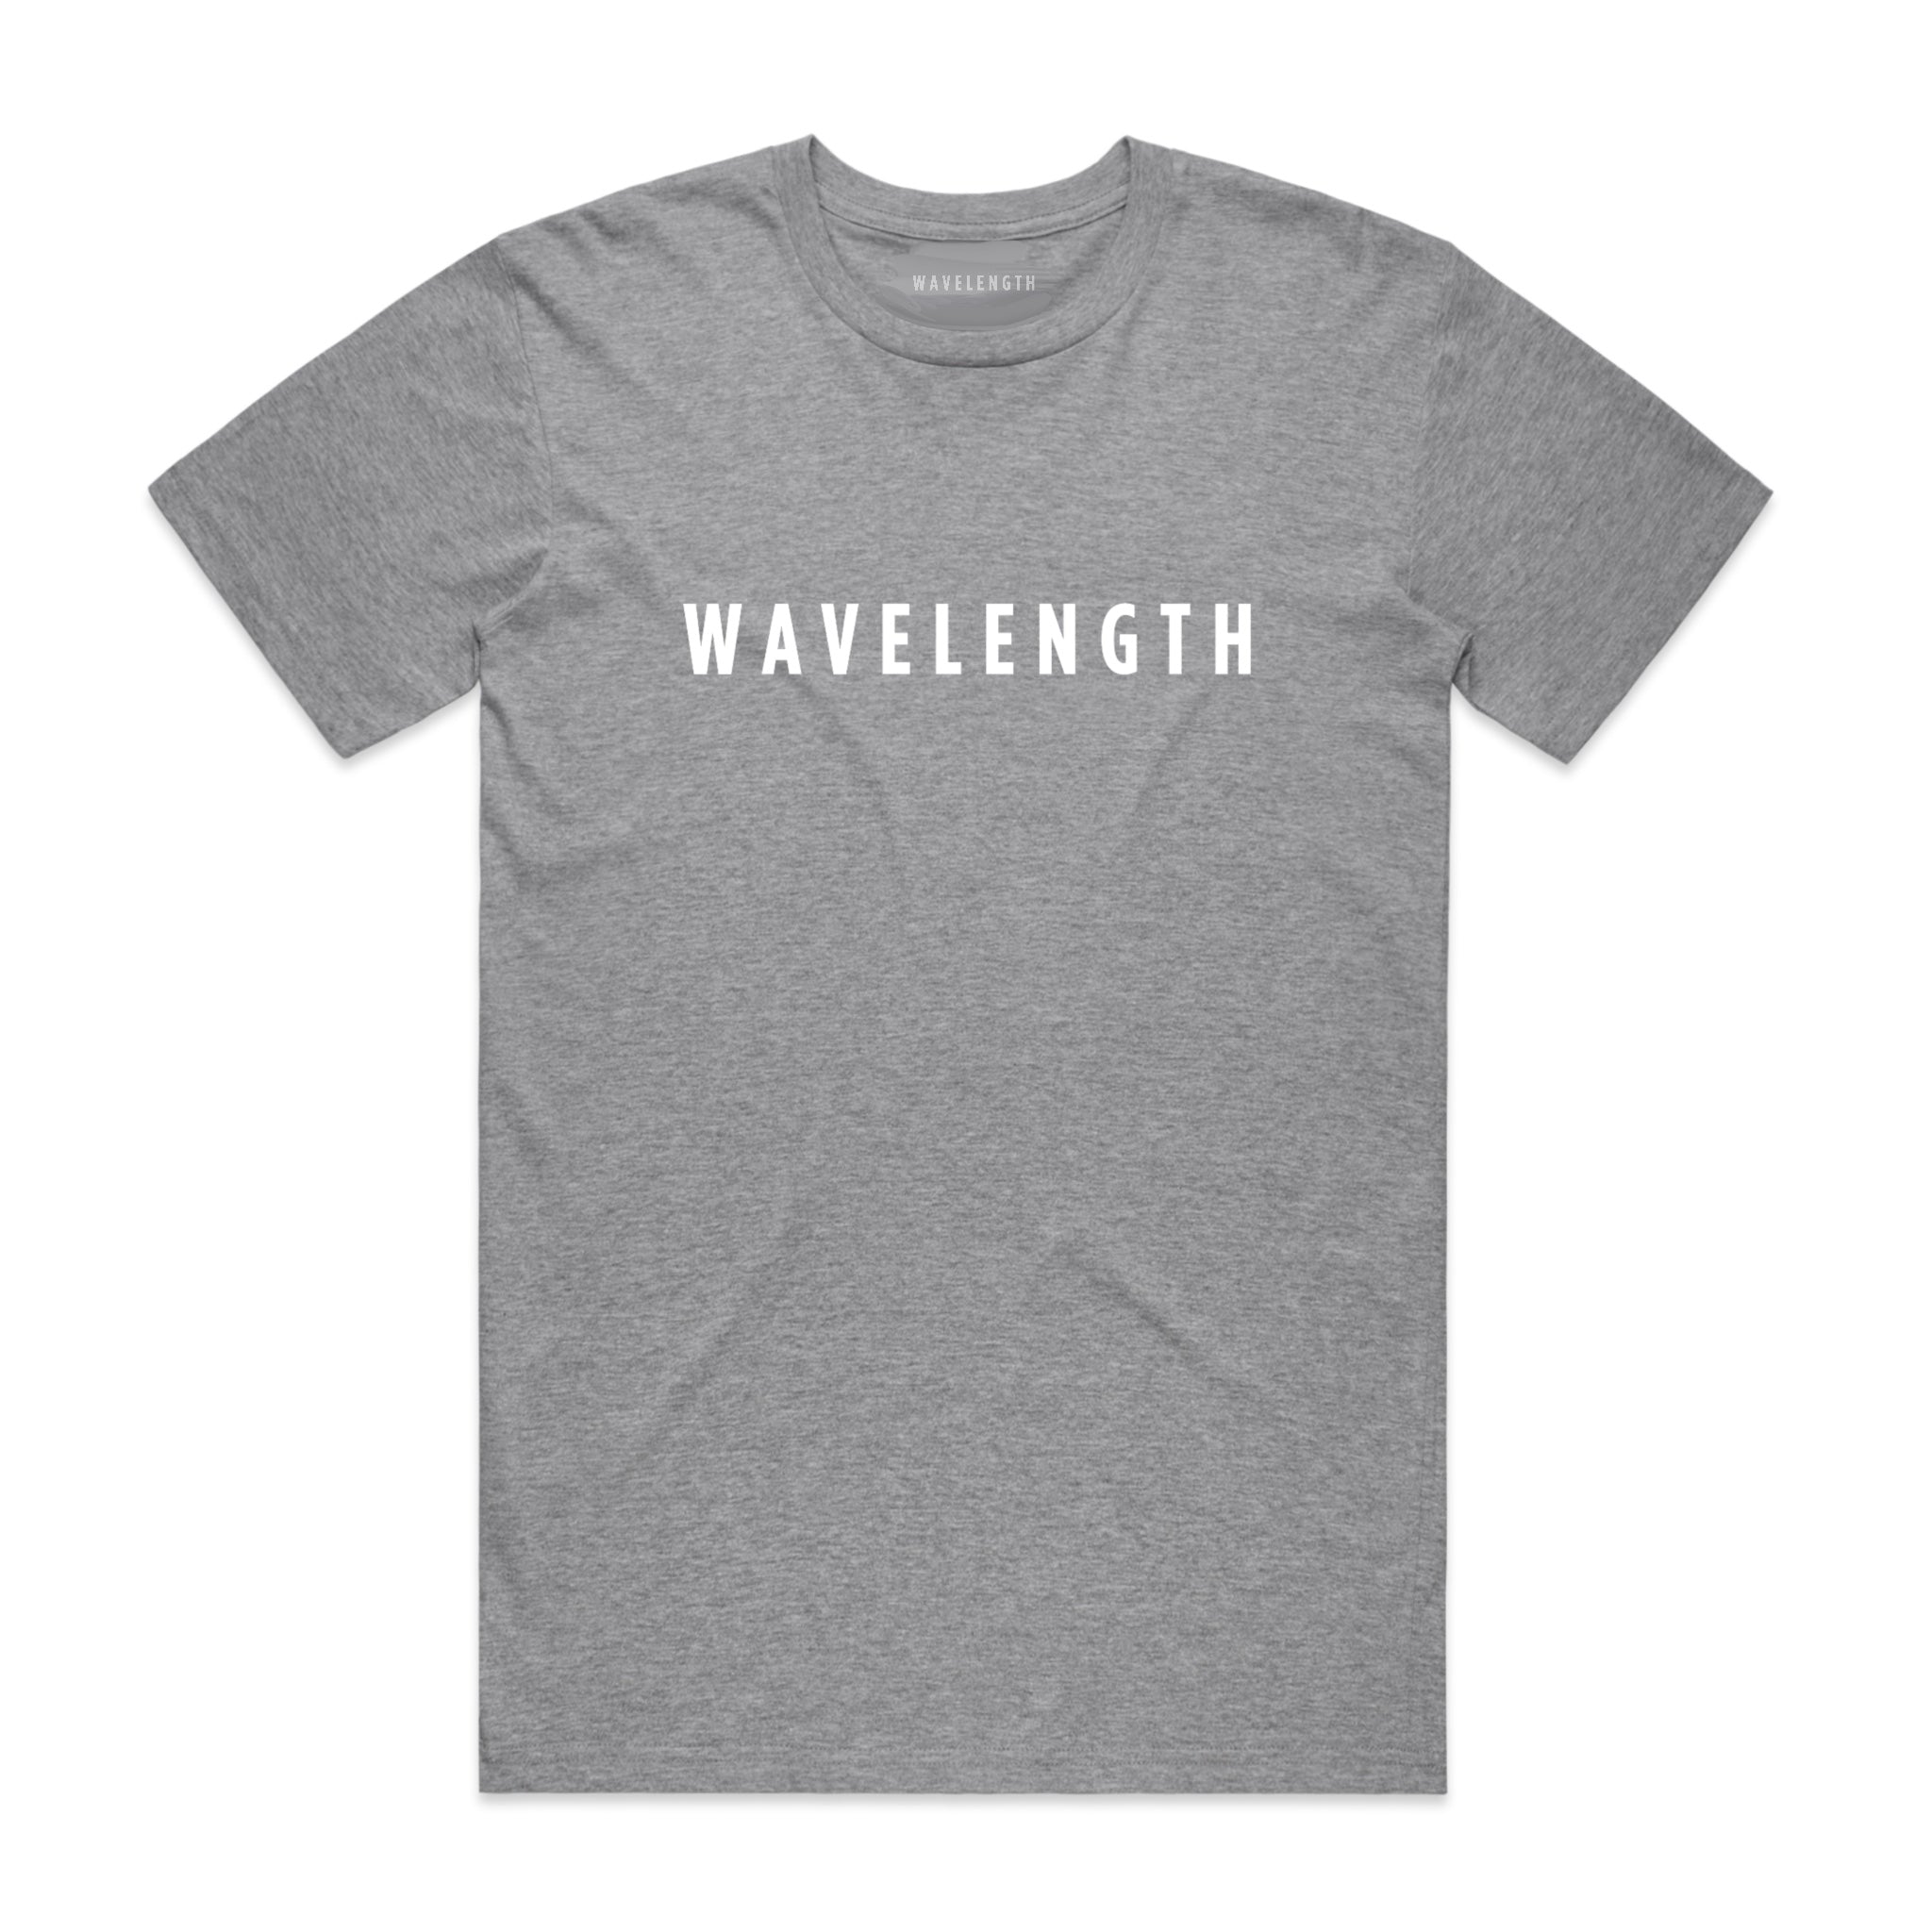 Wavelength Masthead T-shirt - Grey / White